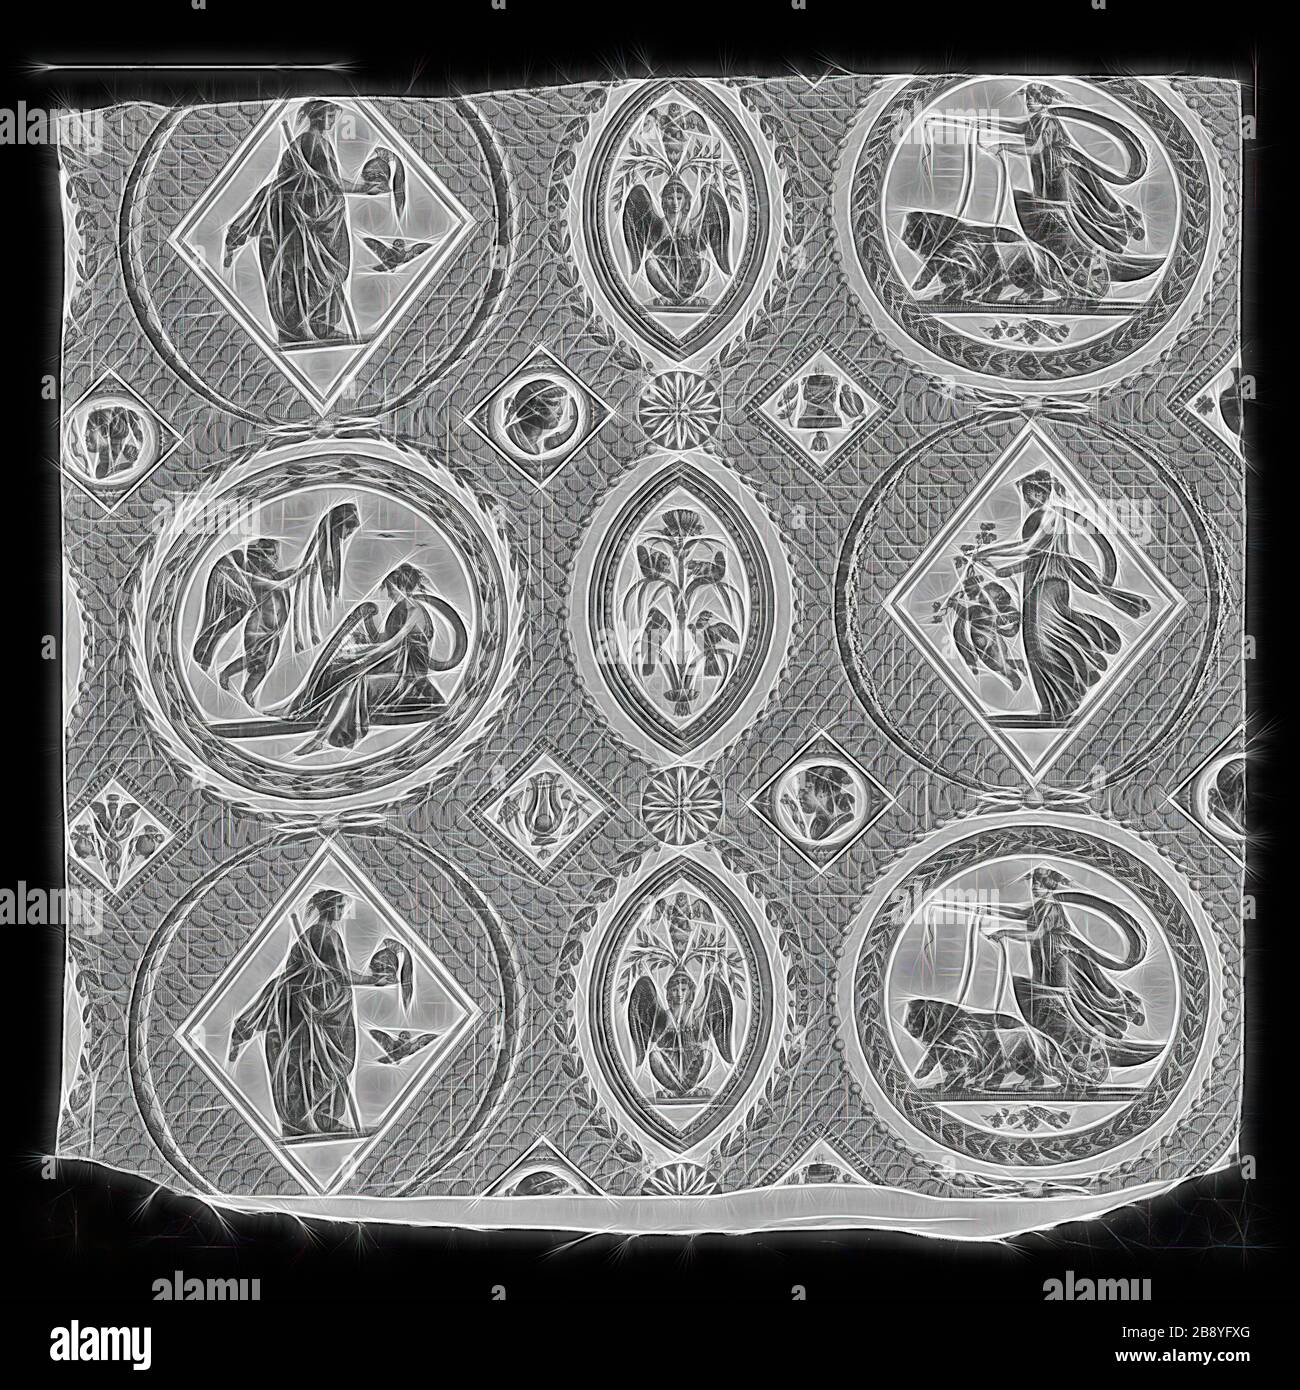 Medaglioni Antiques (antichi medaglioni) (tessuti per arredamento), c. 1800, progettato da Jean Baptiste Huet (francese, 1748–1811) dopo Rapheal (italiano, 1483-1520), prodotto da Oberkampf Manufactory (francese, 1738–1815), Francia, Jouy-en-Josas, Francia, cotone, tessitura piana, copperplate stampato, 75,2 × 83,2 cm (29 5/8 × 32 3/4 in.), Reimagined illuminato da luce calda e radianza. Arte classica reinventata con un tocco moderno. La fotografia ispirata al futurismo, che abbraccia l'energia dinamica della tecnologia moderna, del movimento, della velocità e rivoluziona la cultura. Foto Stock